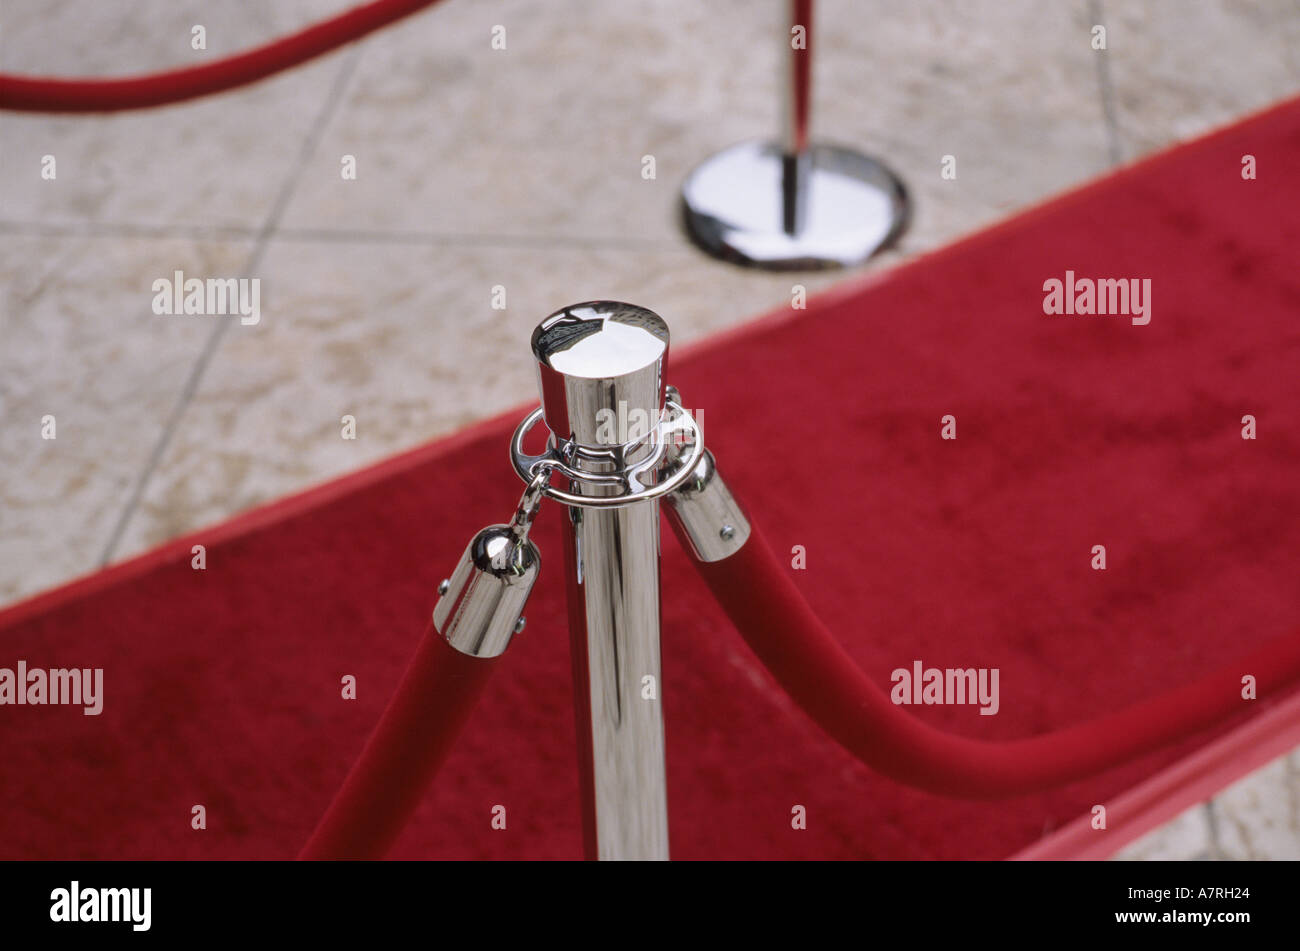 Velvet ropes and red carpet on sidewalk for awards ceremony. 'Red Carpet' treatment. Stock Photo